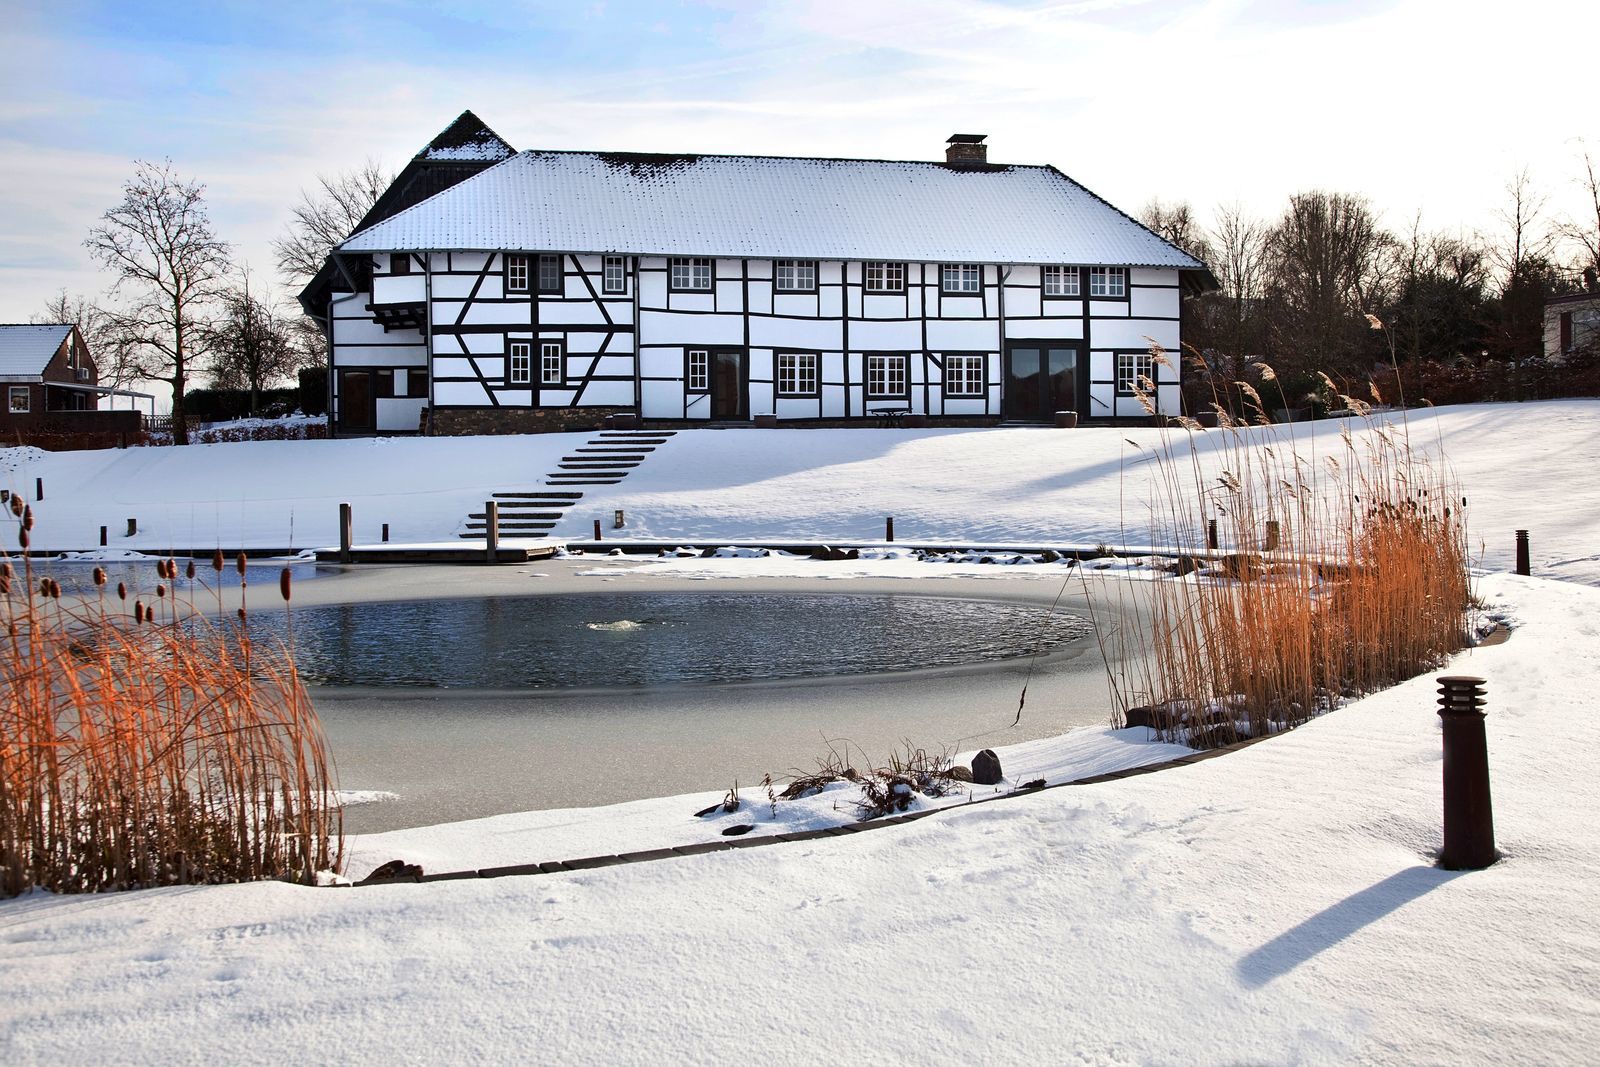 Villapparte-Special Villa's-Carrehoeve A-Gen-Beuke-luxe vakantiehuis voor 20 personen-binnen zwembad-groepsaccommodatie-Zuid Limburg-winter